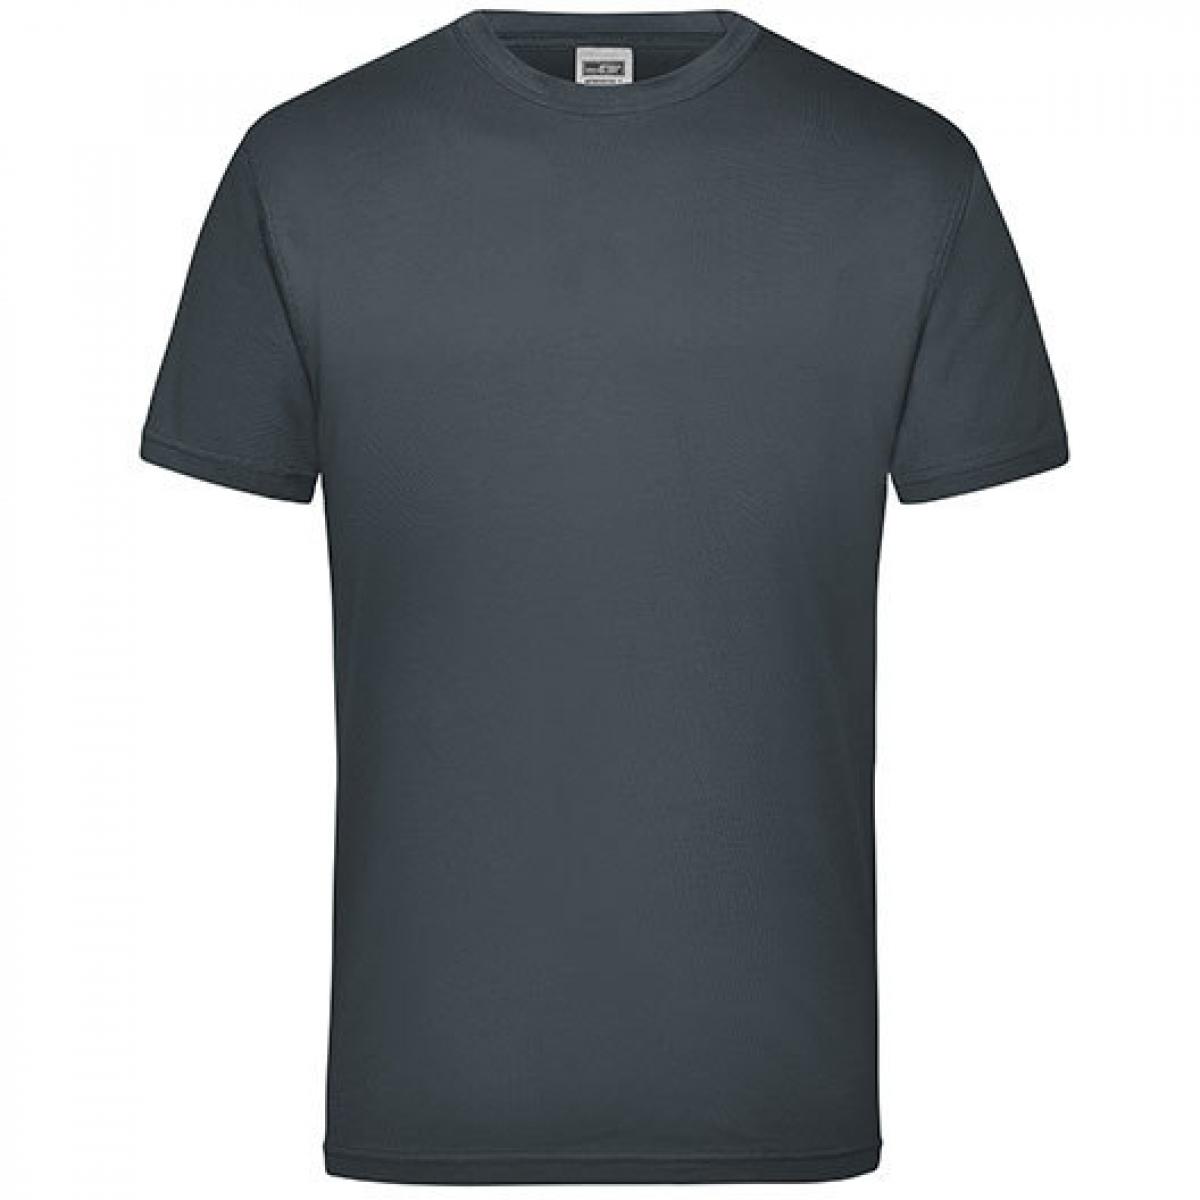 Hersteller: James+Nicholson Herstellernummer: JN 800 Artikelbezeichnung: Workwear Herren T-Shirt - waschbar bis 60 °C Farbe: Carbon